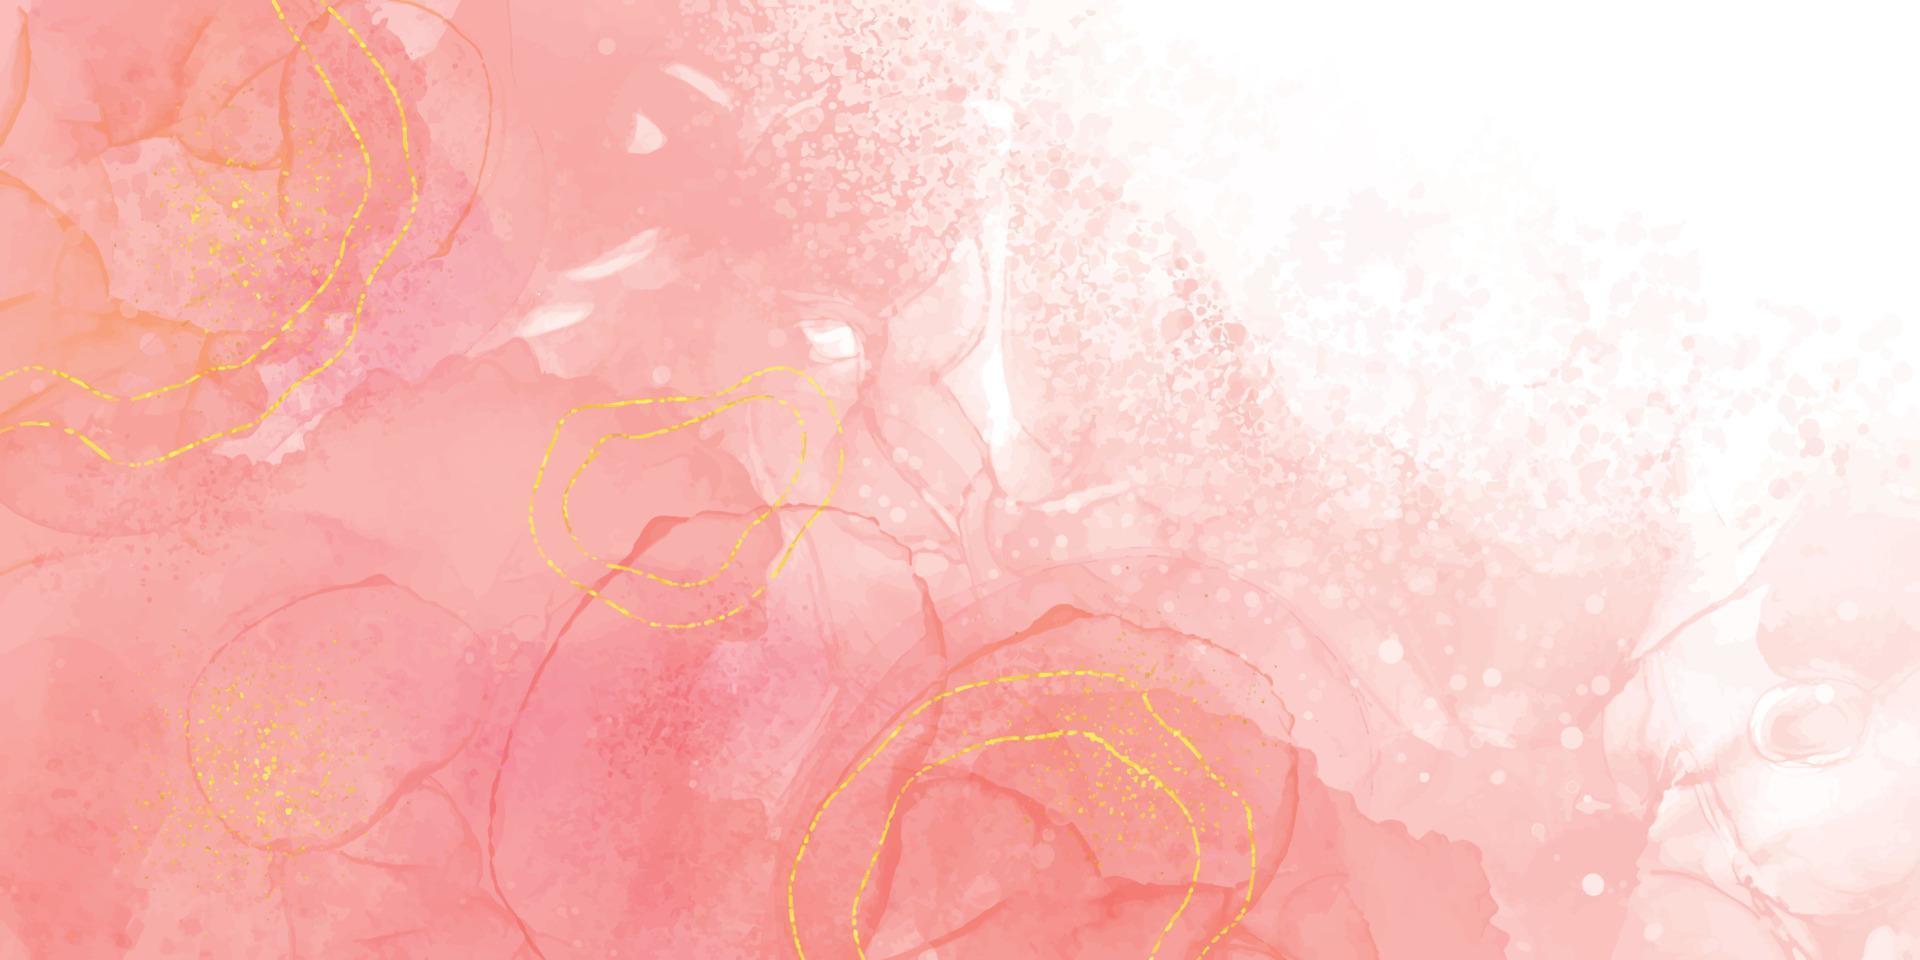 corallo rosa marmo alcool inchiostro elegante sfondo. lusso acquerello liquido illustrazione vettore